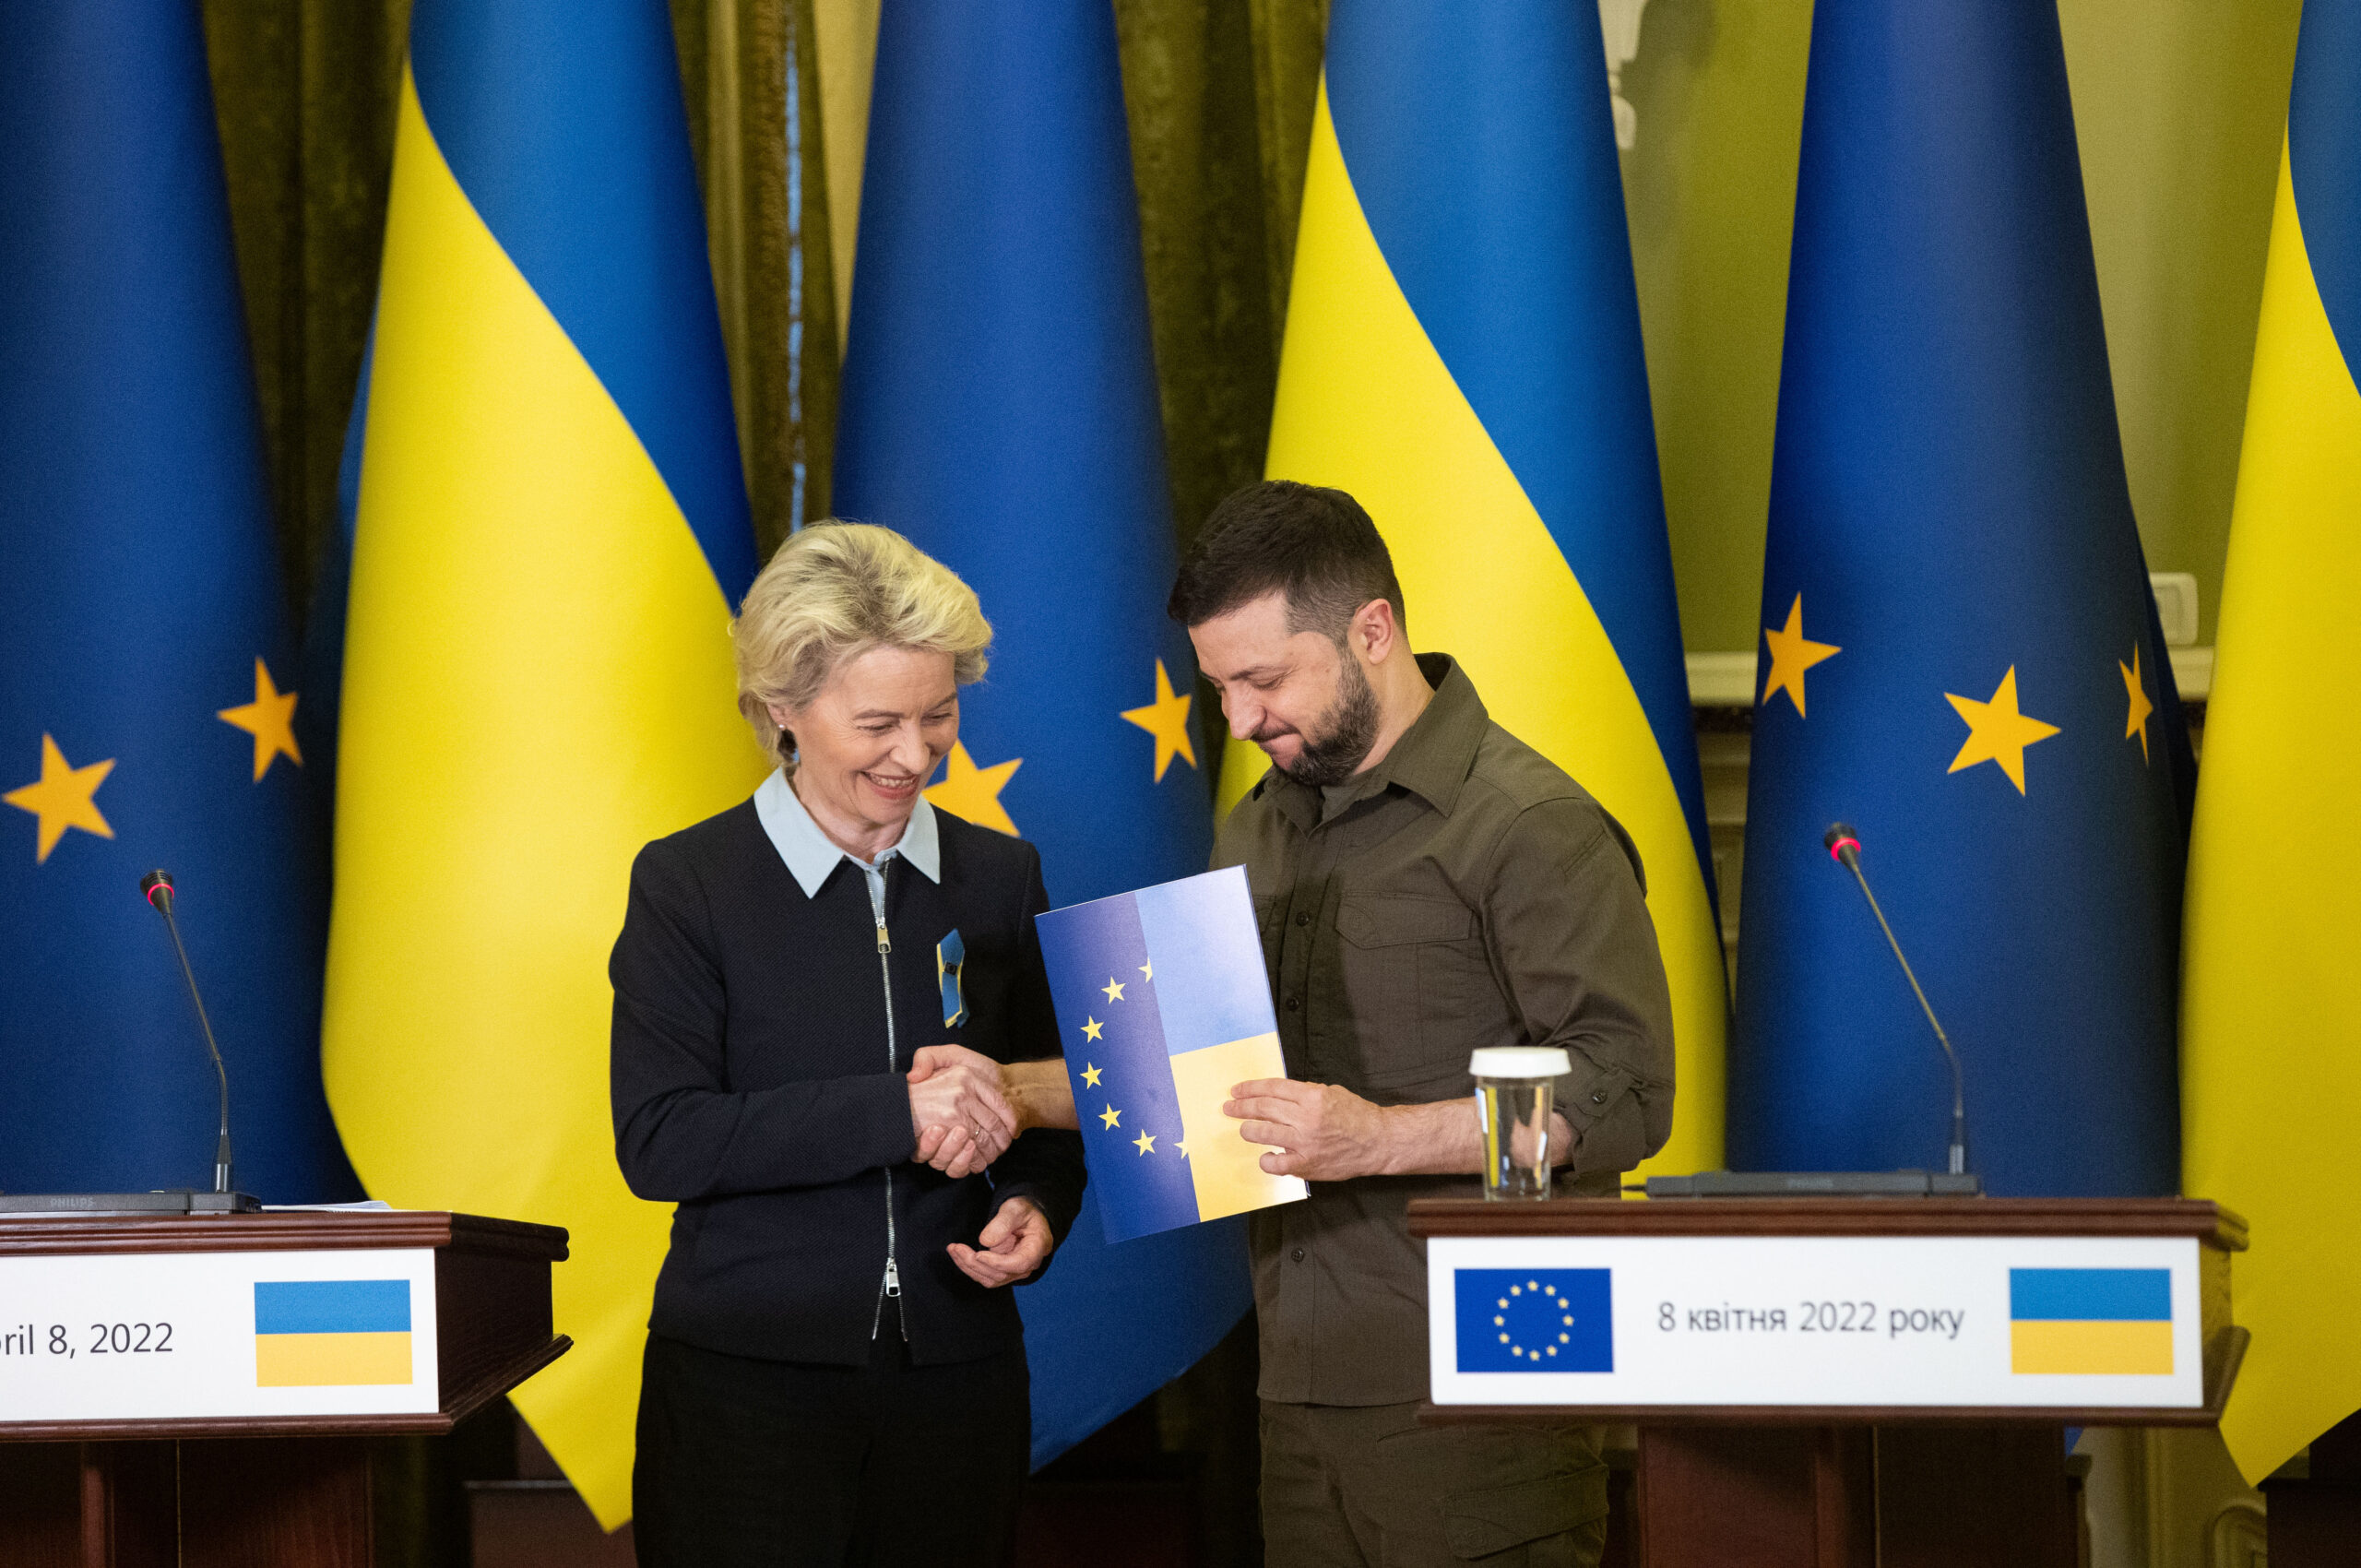 Претендент украины. Вступление Украины в ЕС.